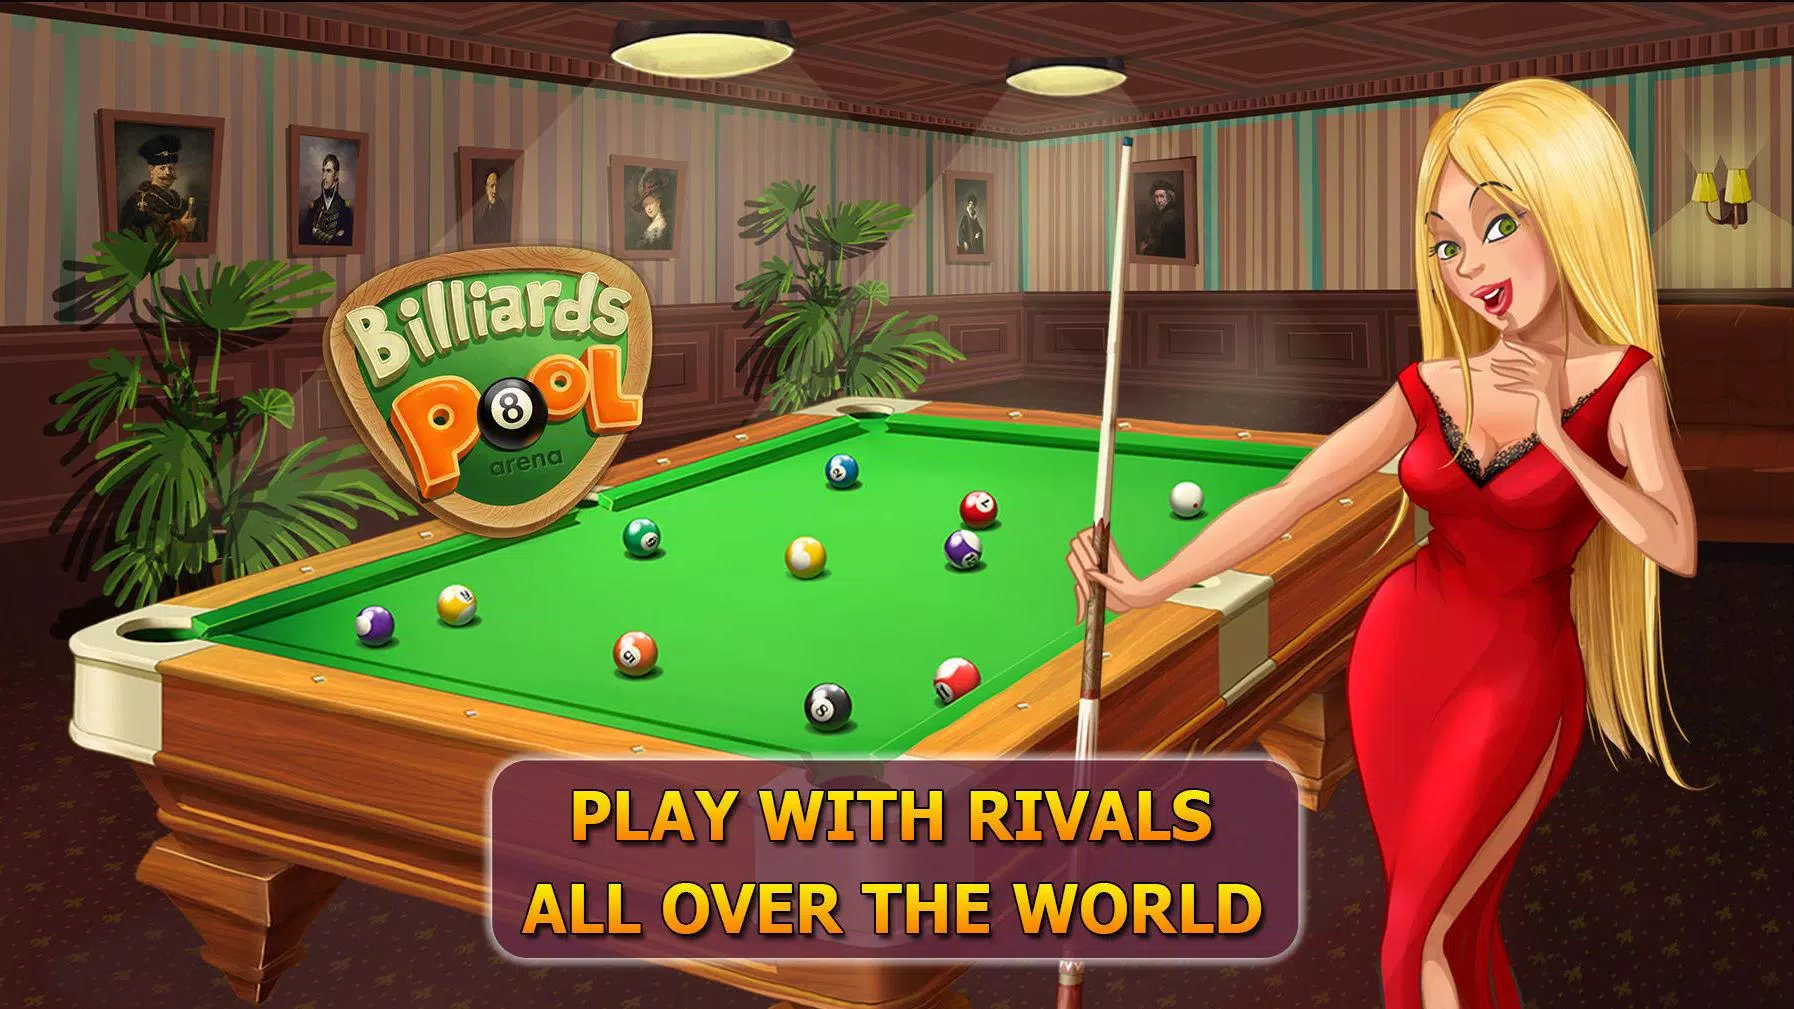 Pool Arena - #1 Billiard Games 1.12.7 Free Download